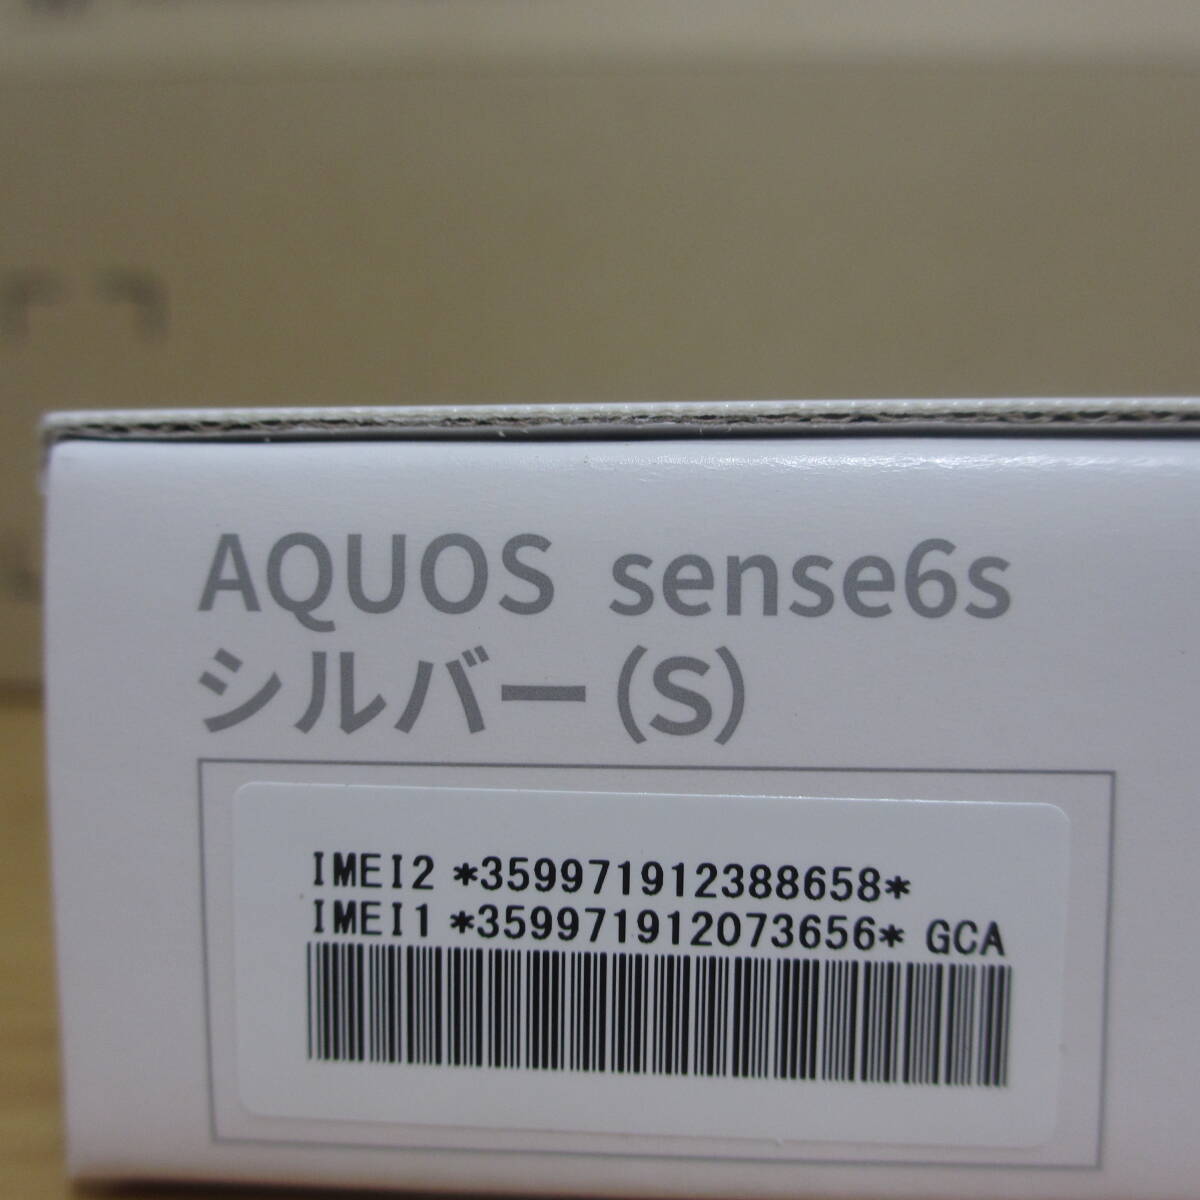 新品 未開封 シャープ AQUOS sense6s SH-RM19s 楽天版 シルバー SIMフリー 残債なし 送料無料  シルバーの画像4